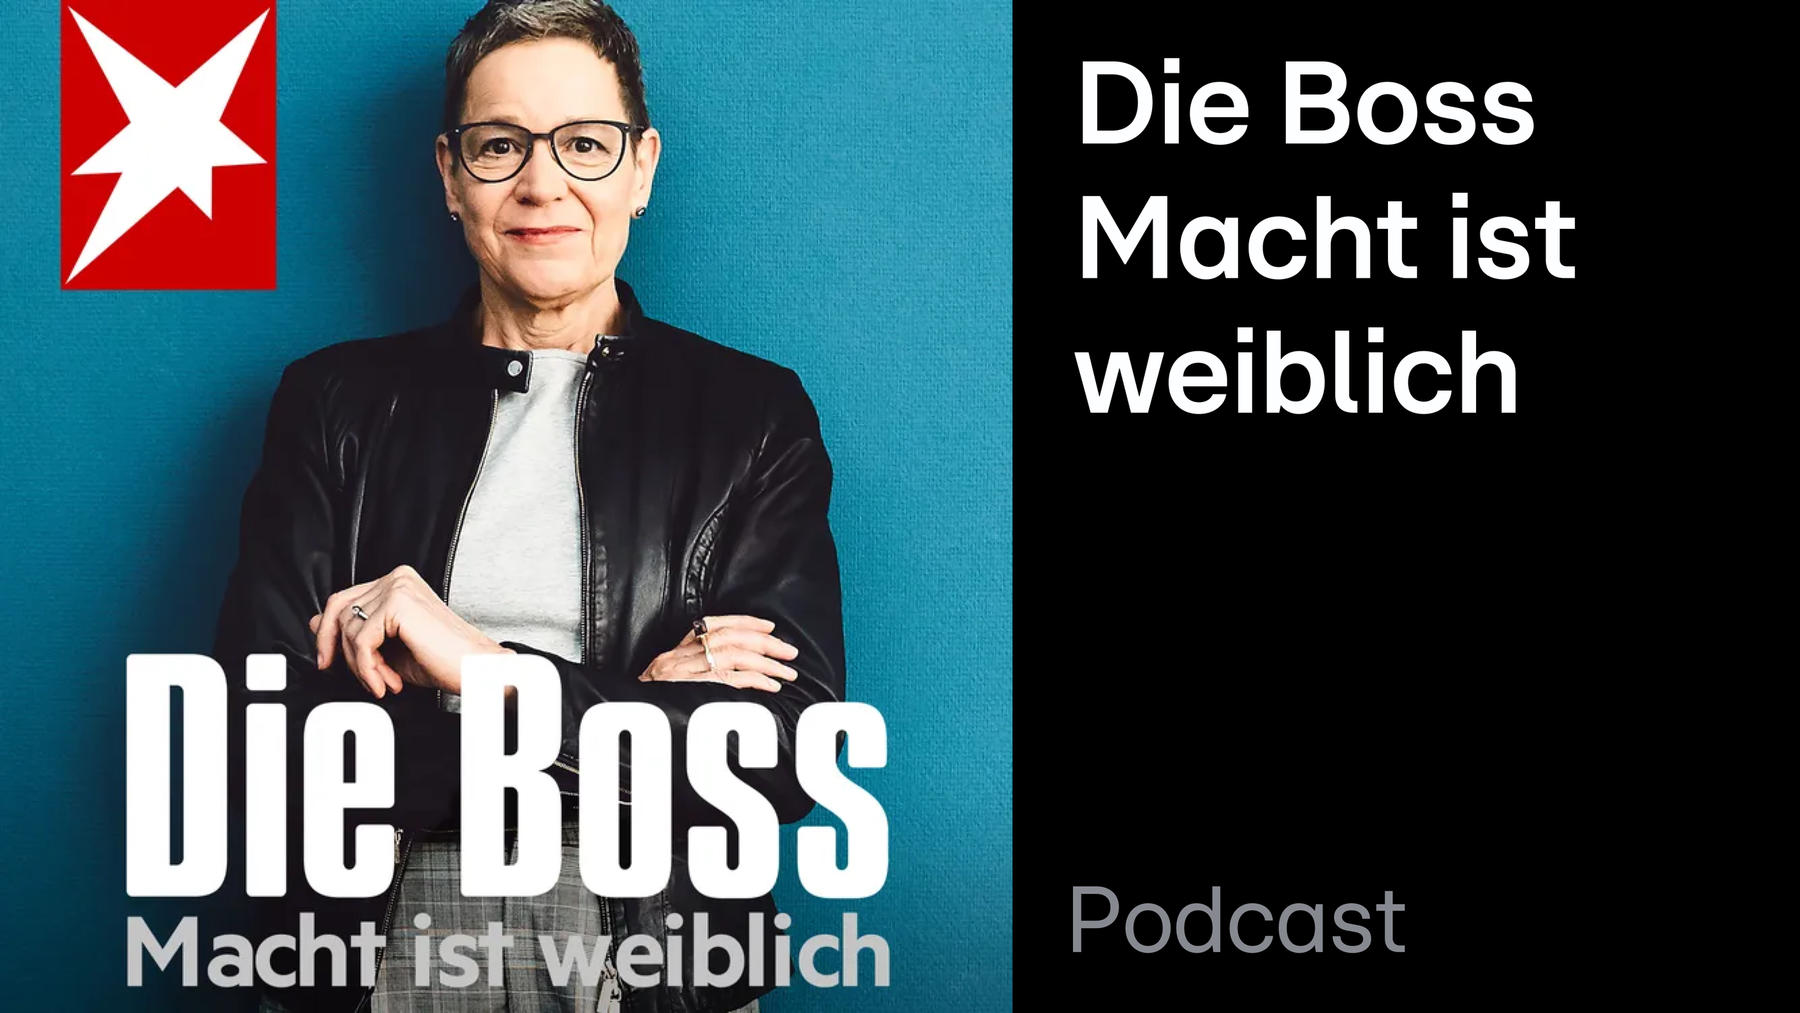 Podcast: Die Boss - Macht ist weiblich